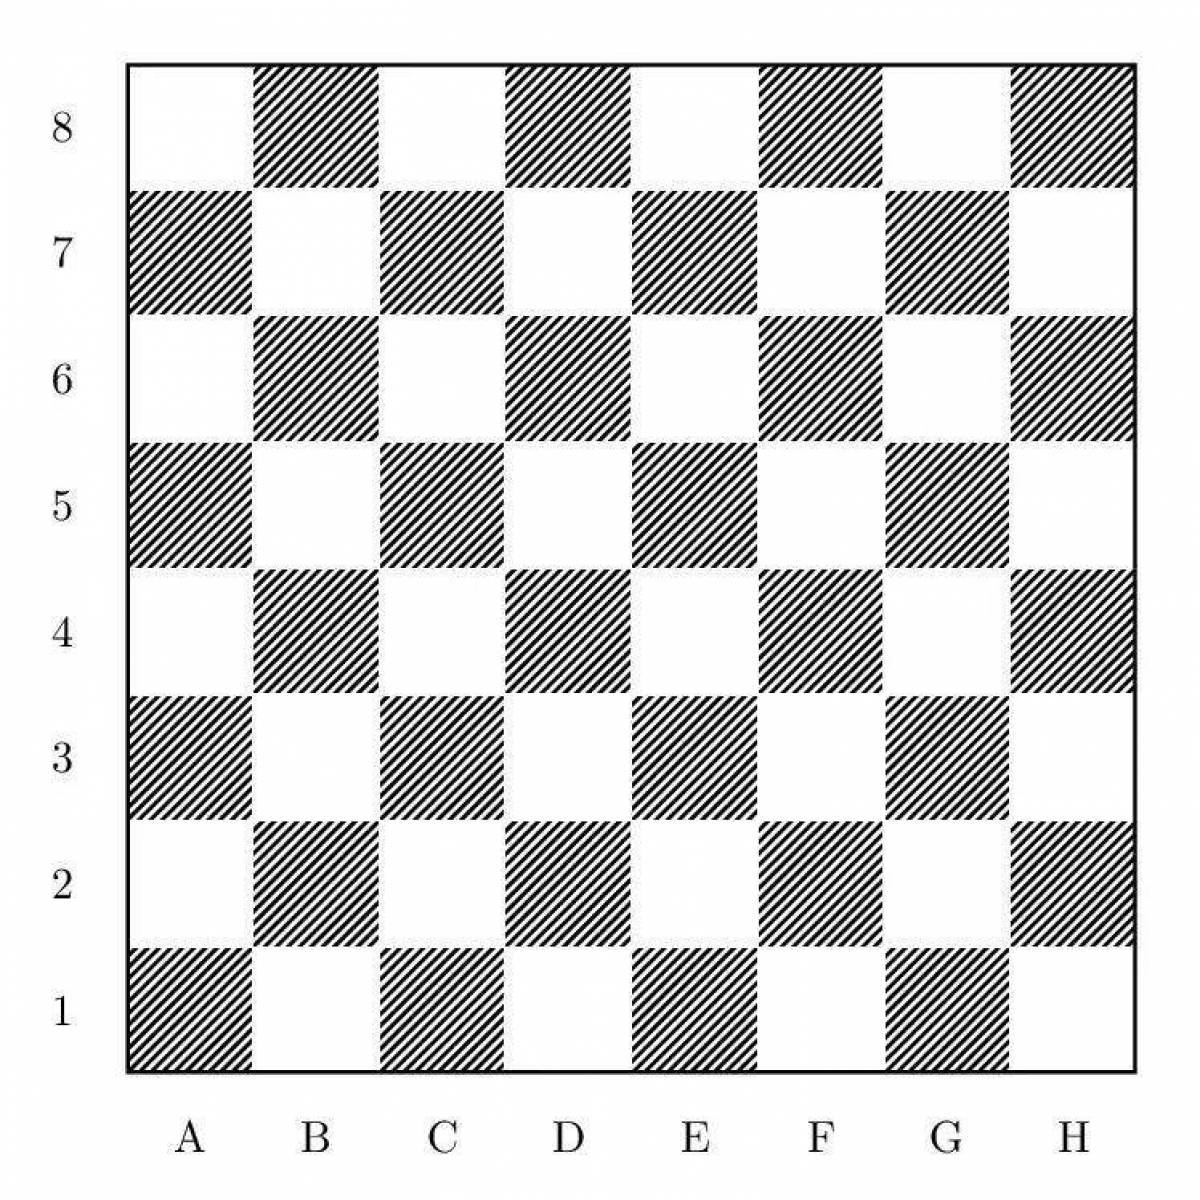 Раскрасить шахматную доску в соответствии с позицией ферзя